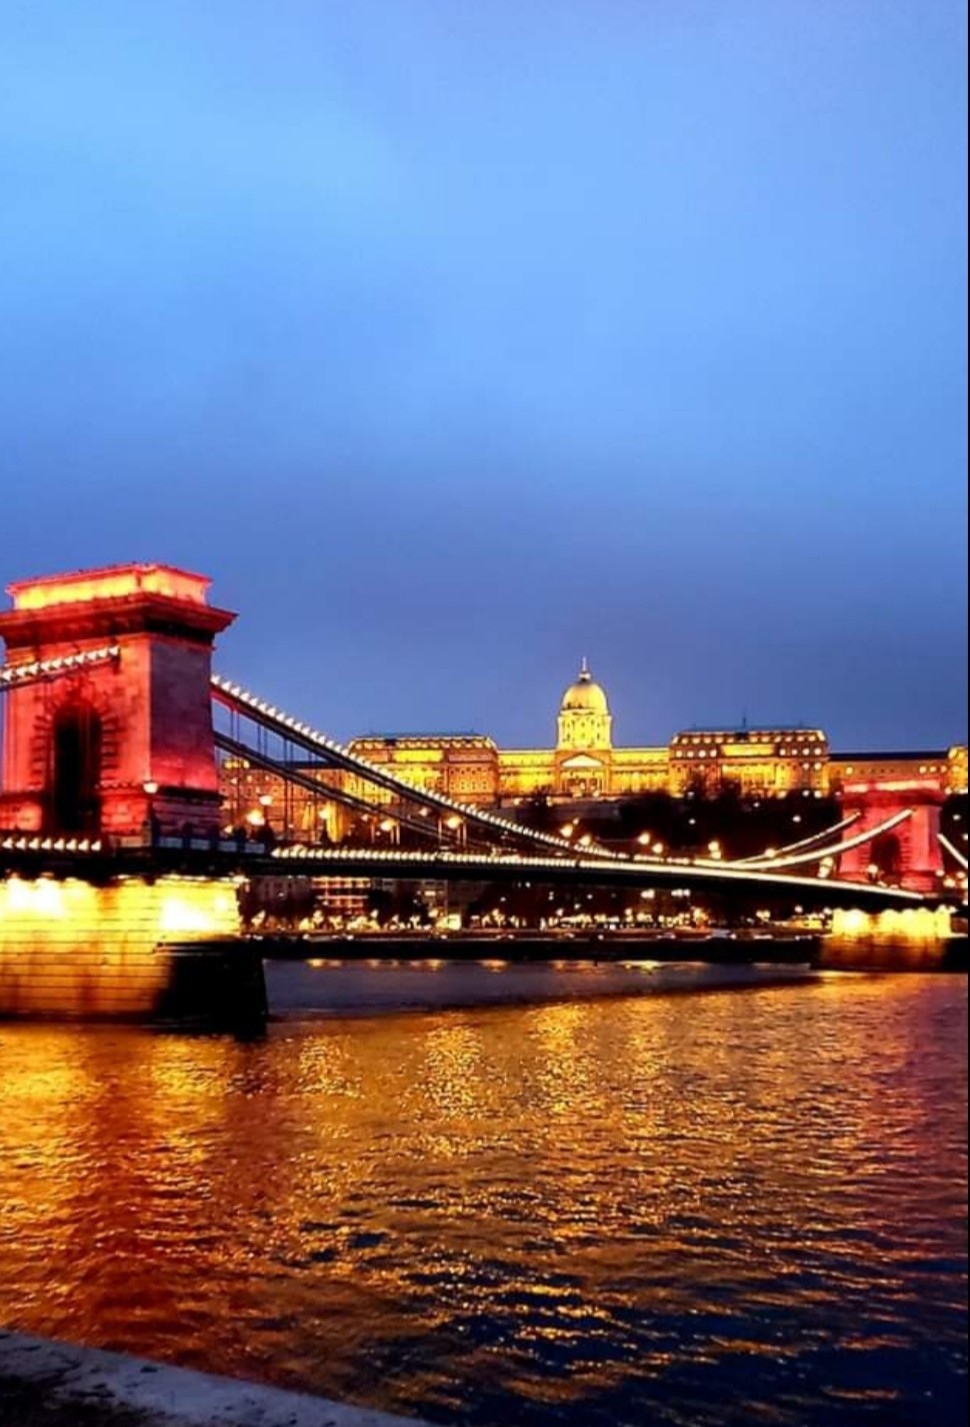 Buda Castle. Chain Bridge. Danube River. Budapest.